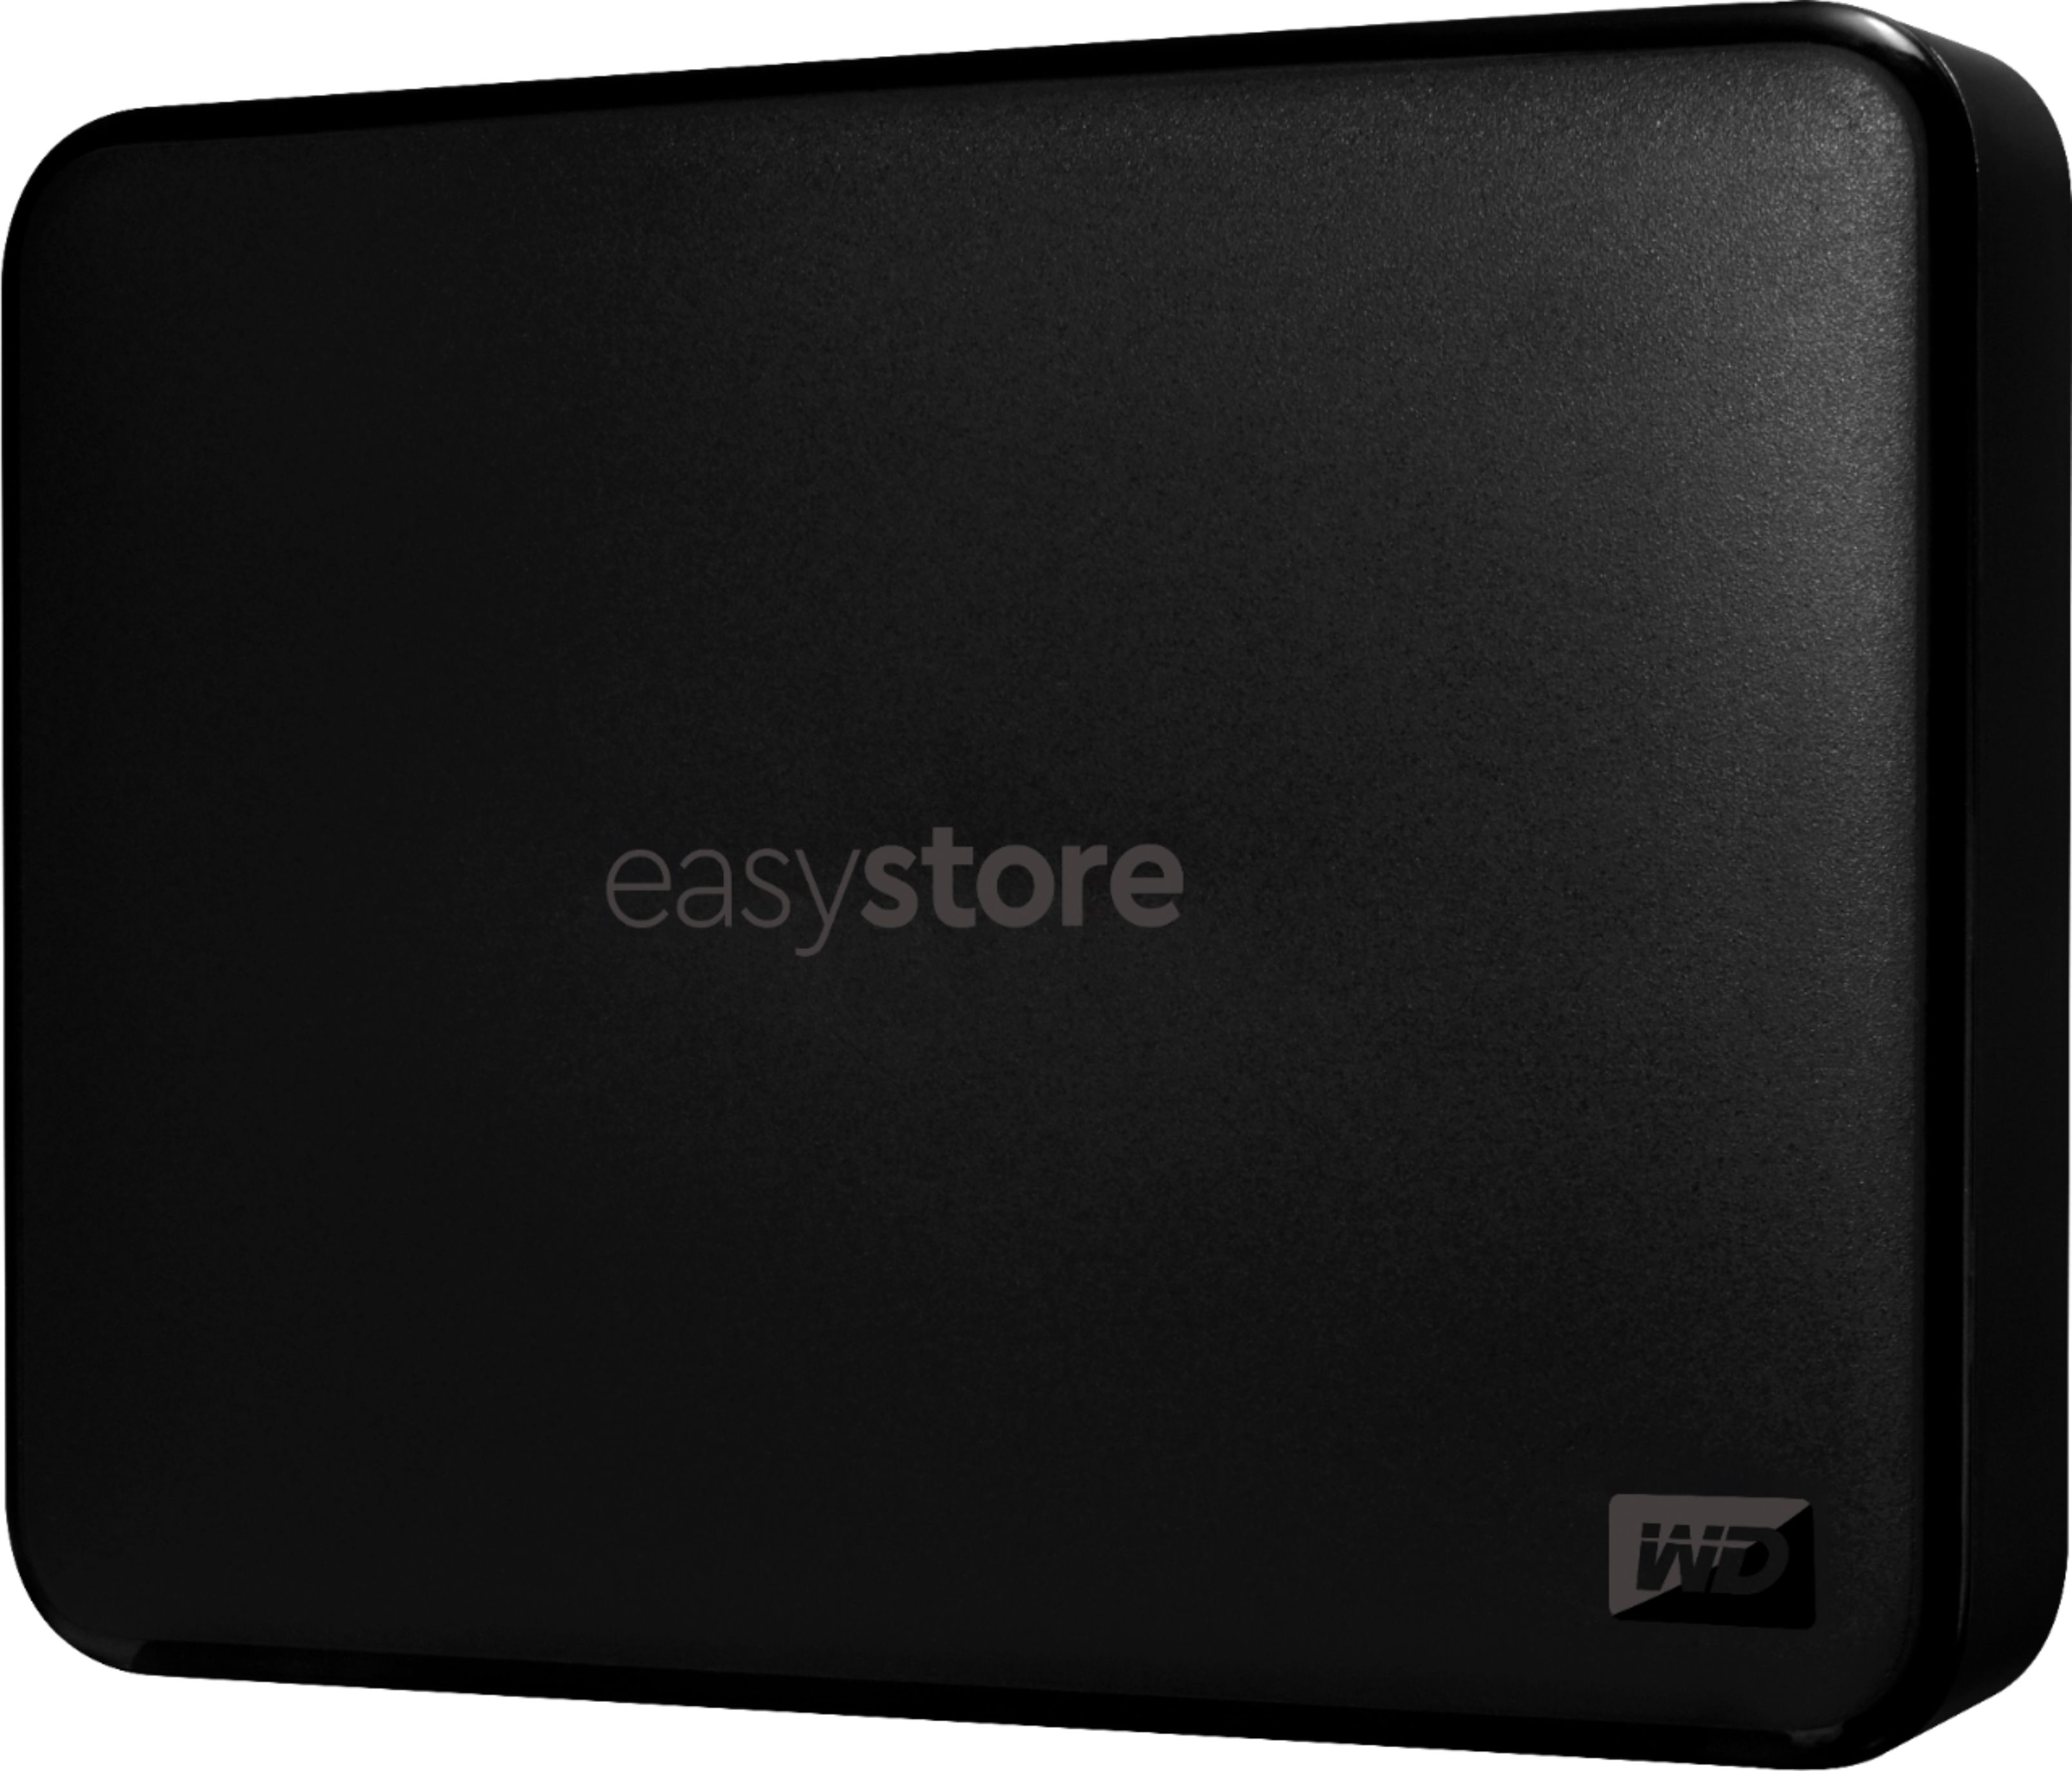 WD Easystore 4TB External 3.0 Portable Hard Drive Black WDBAJP0040BBK-WESN - Best Buy